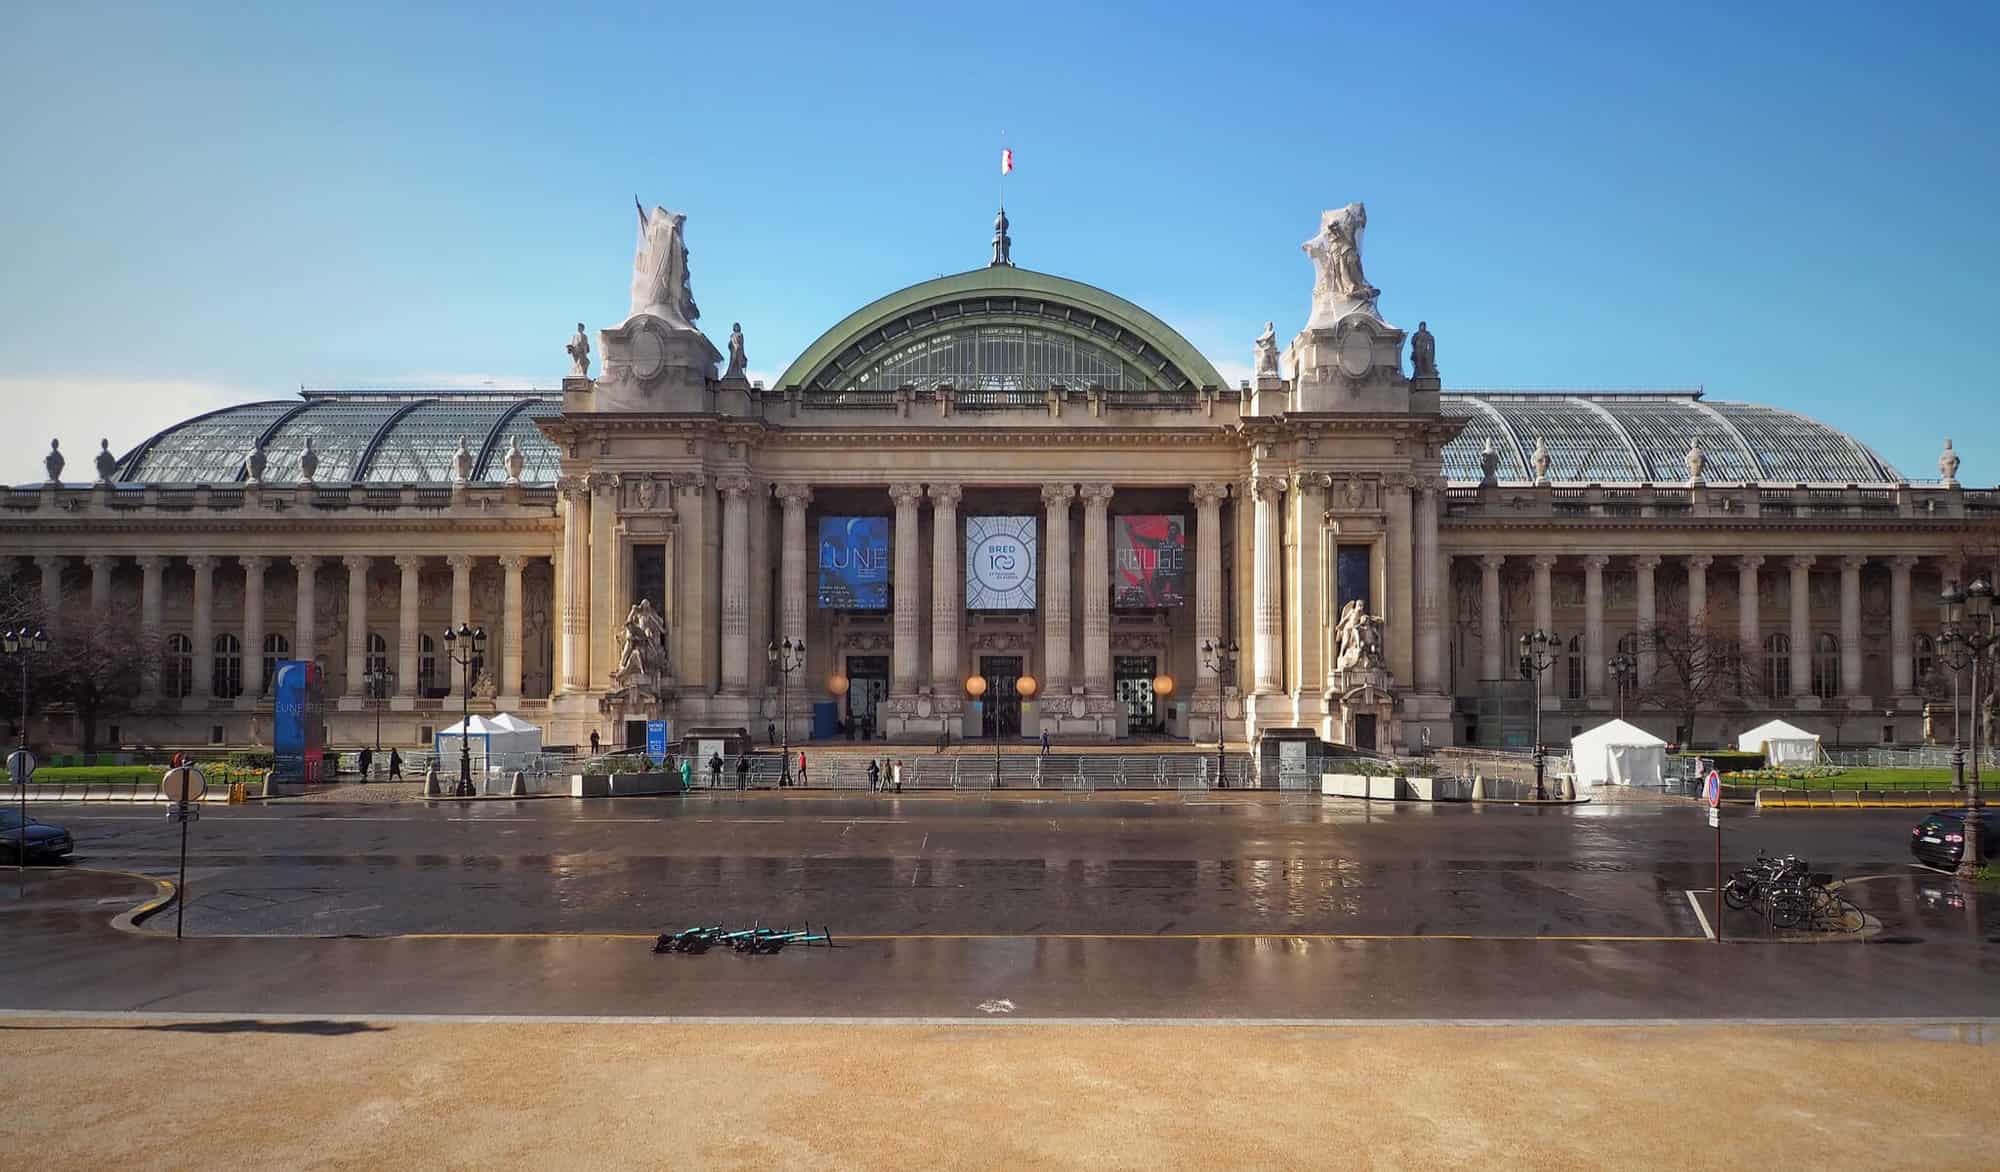 The exterior of Paris's Grand Palais.